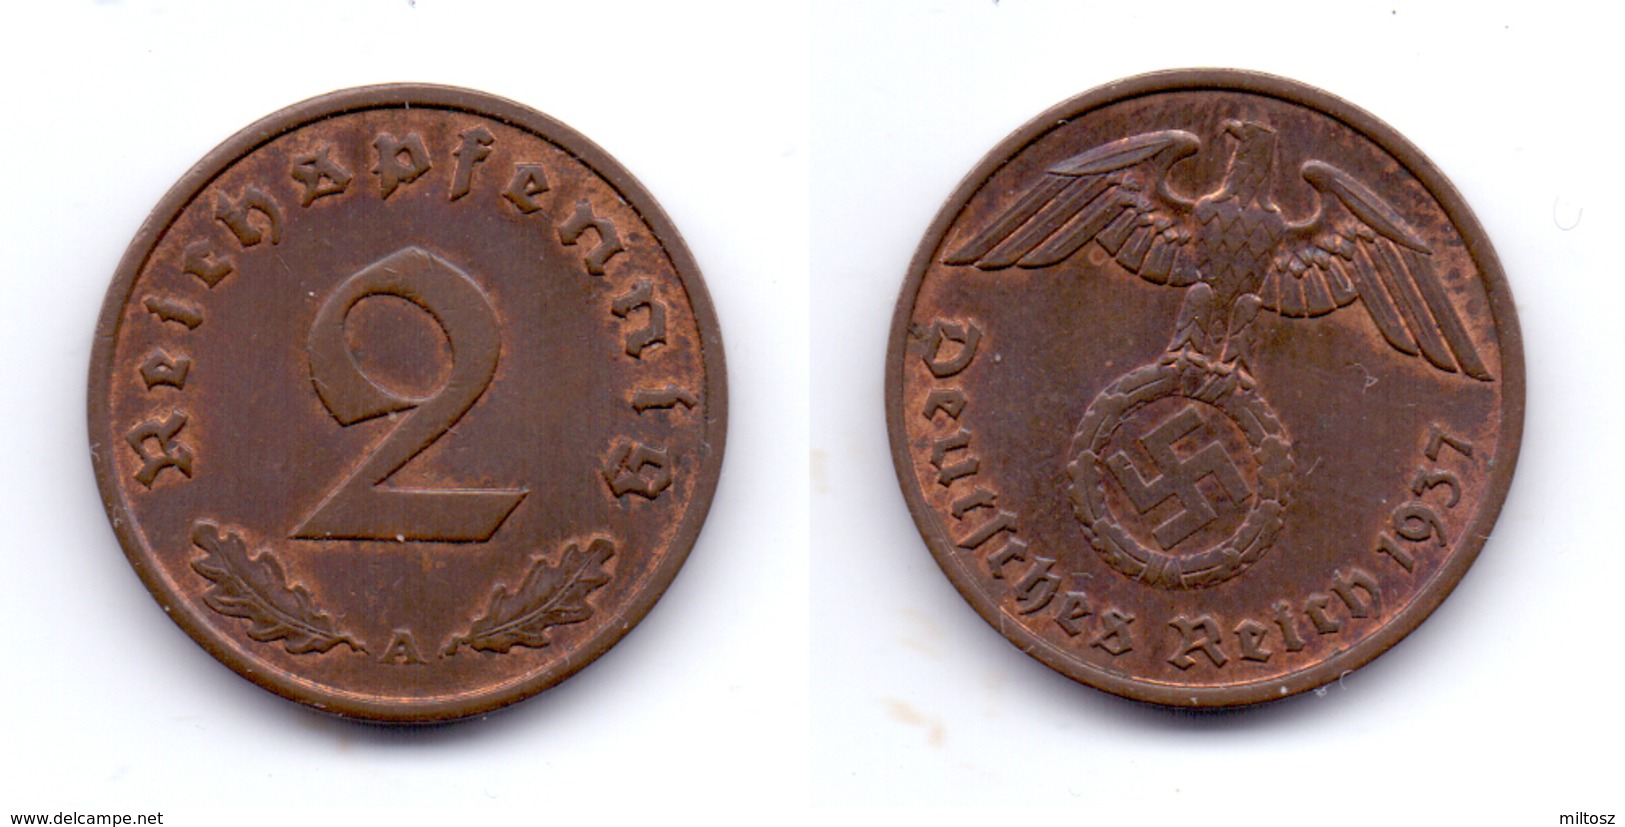 Germany 2 Reichspfennig 1937 A - 2 Reichspfennig